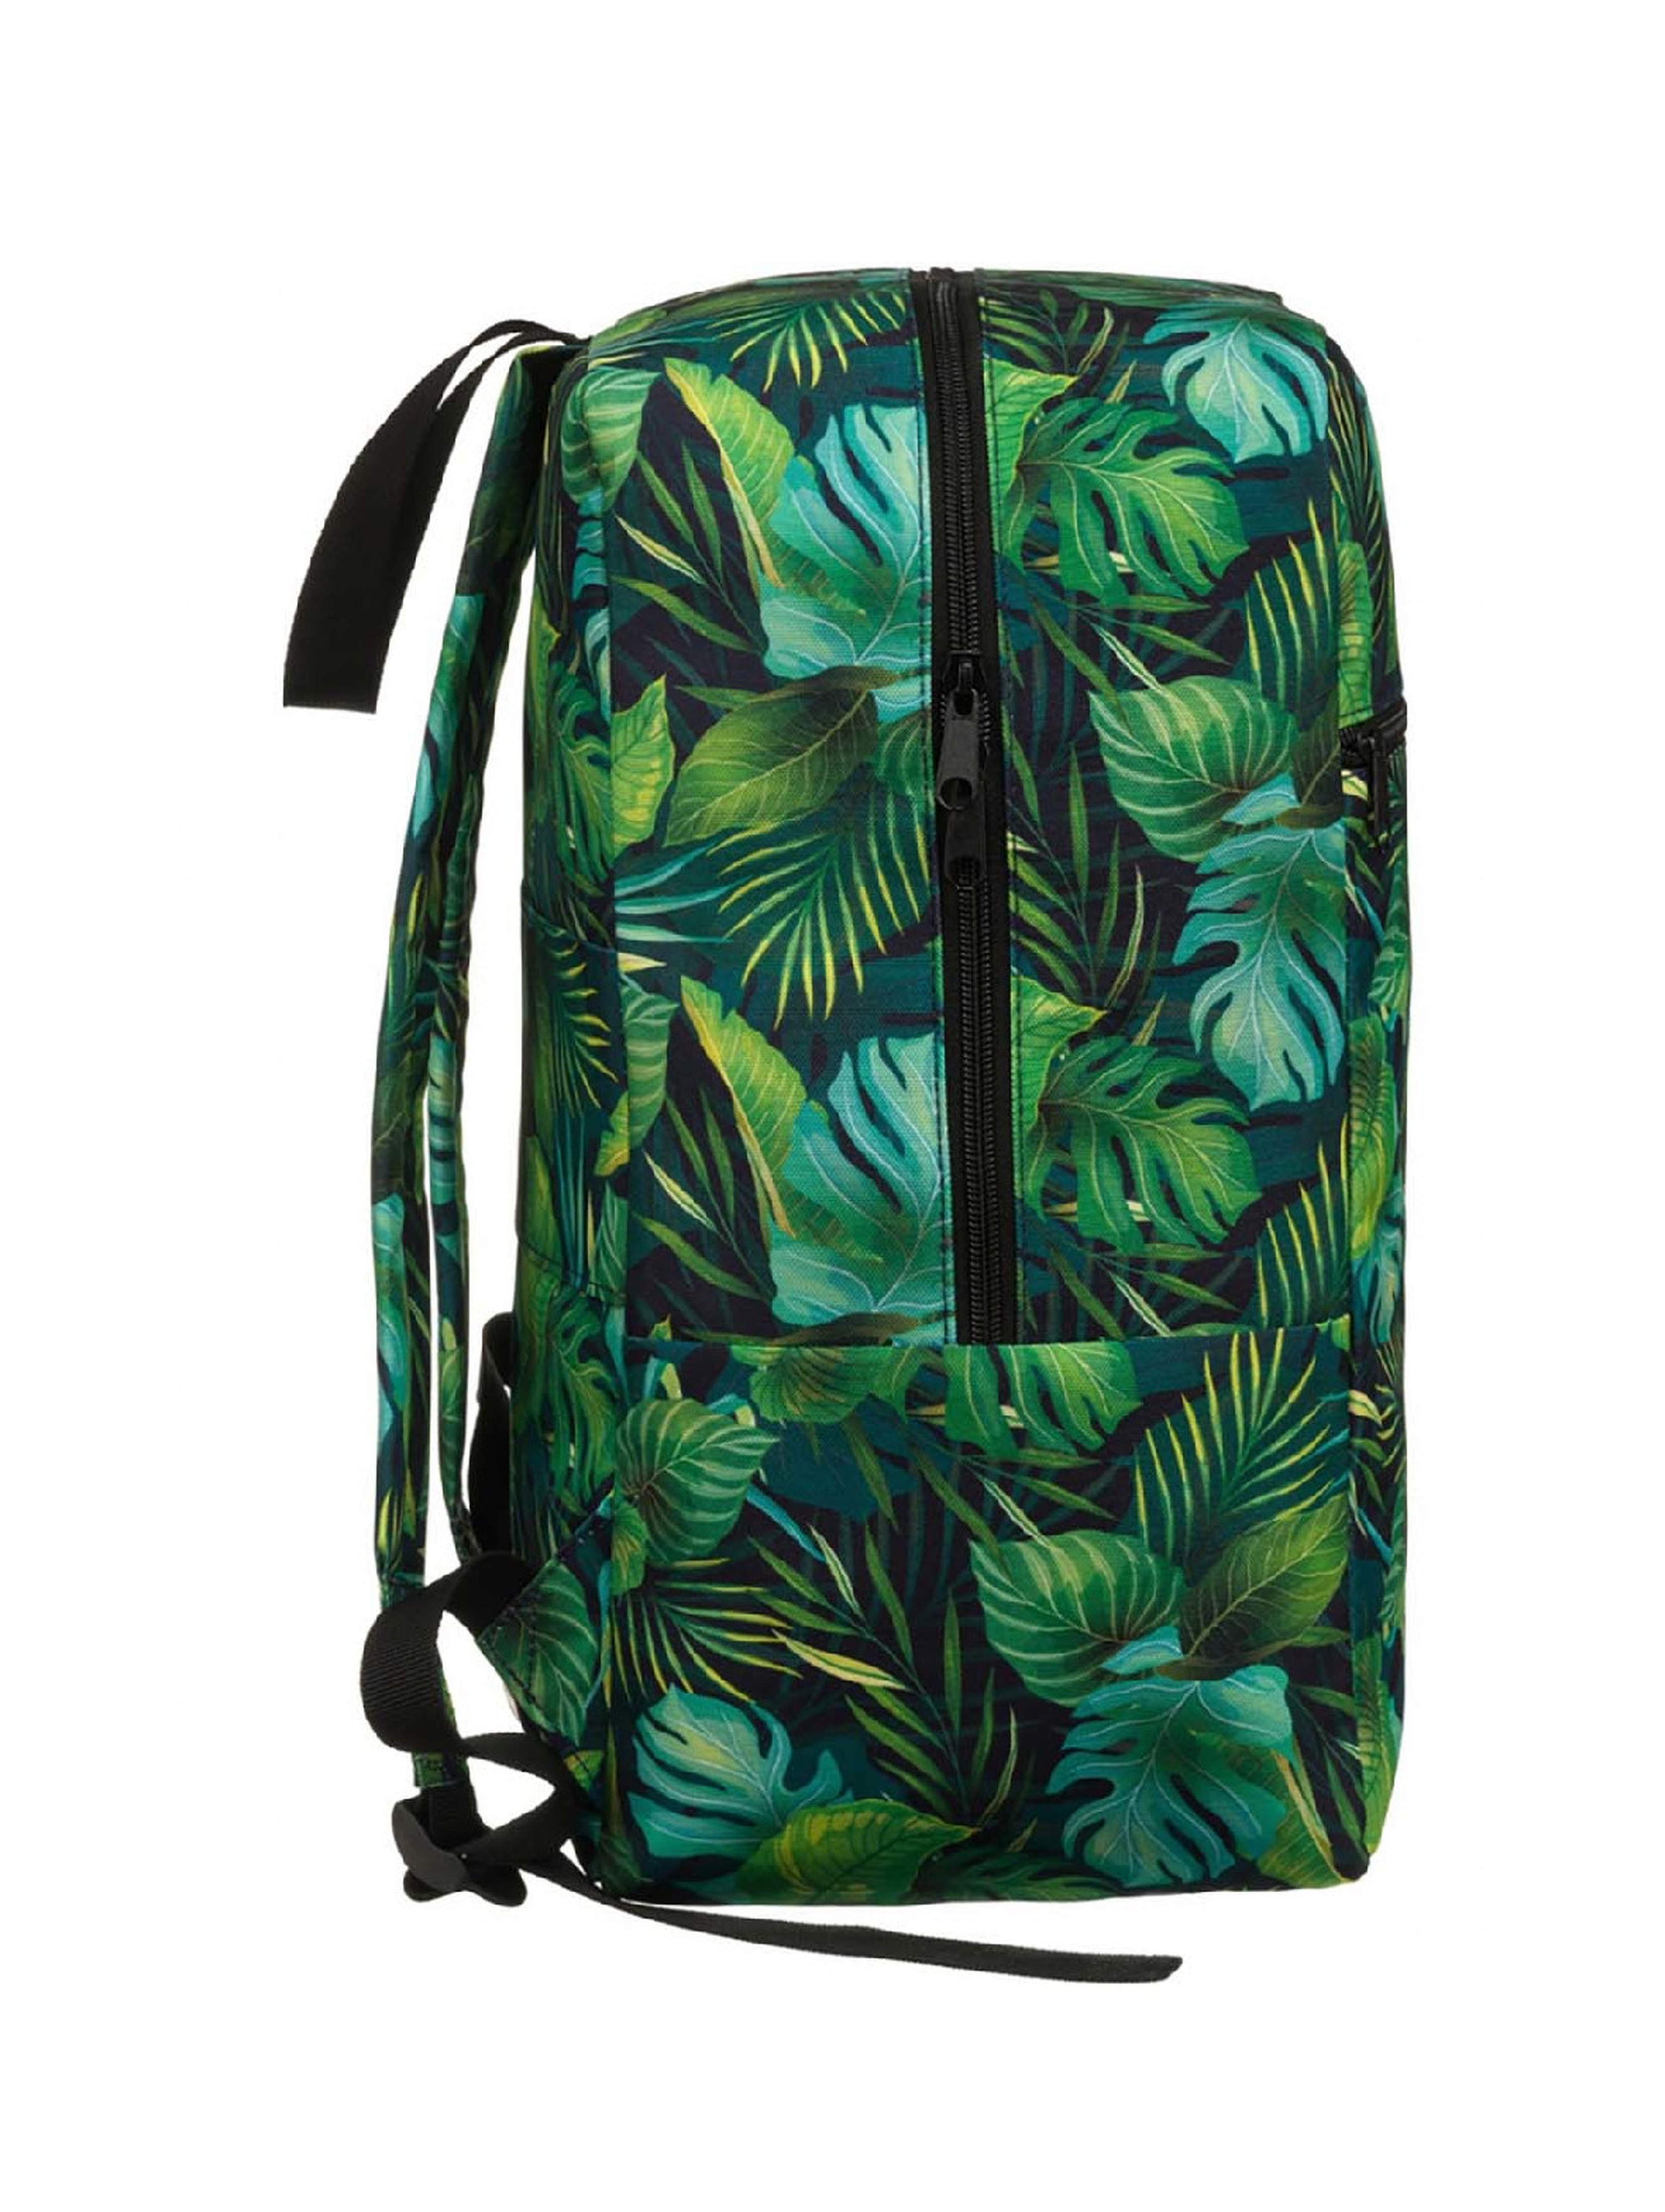 Jednokomorowy plecak zielony podróżny z trwałego poliestru - Rovicky